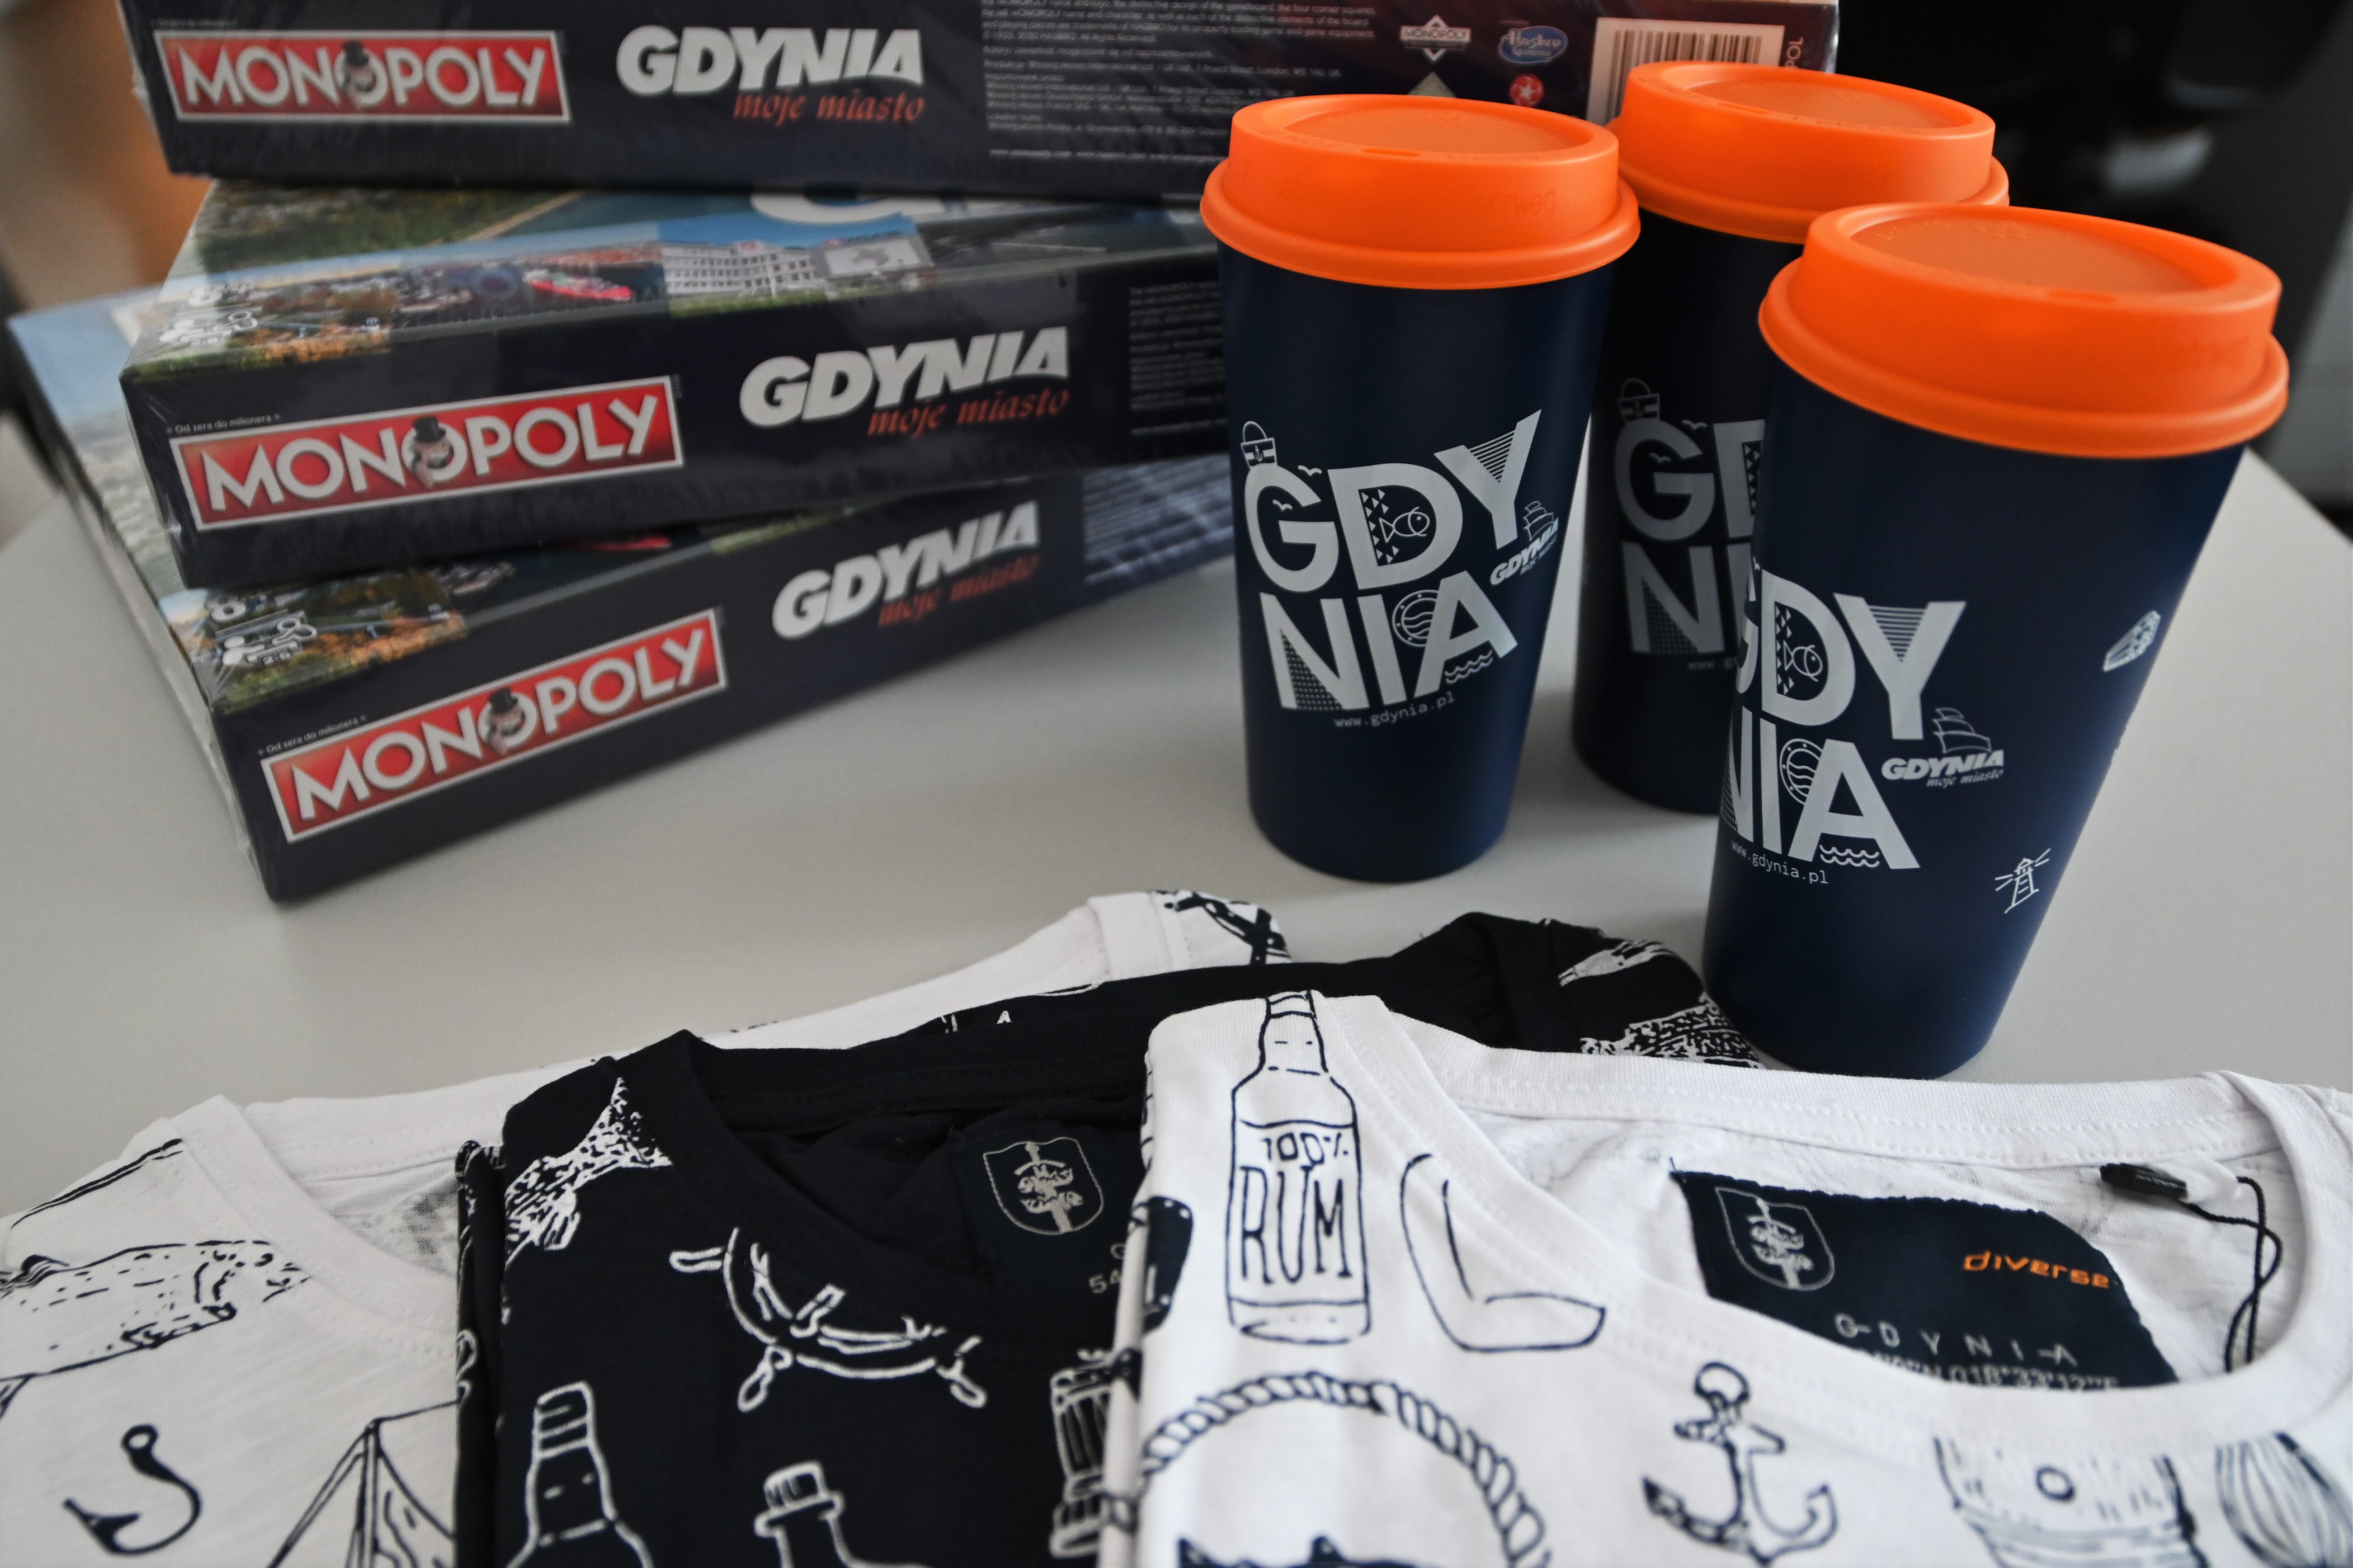 Gry planszowe "Monopoly Gdynia", kubki wielorazowe, koszulki z gdyńskimi motywami.